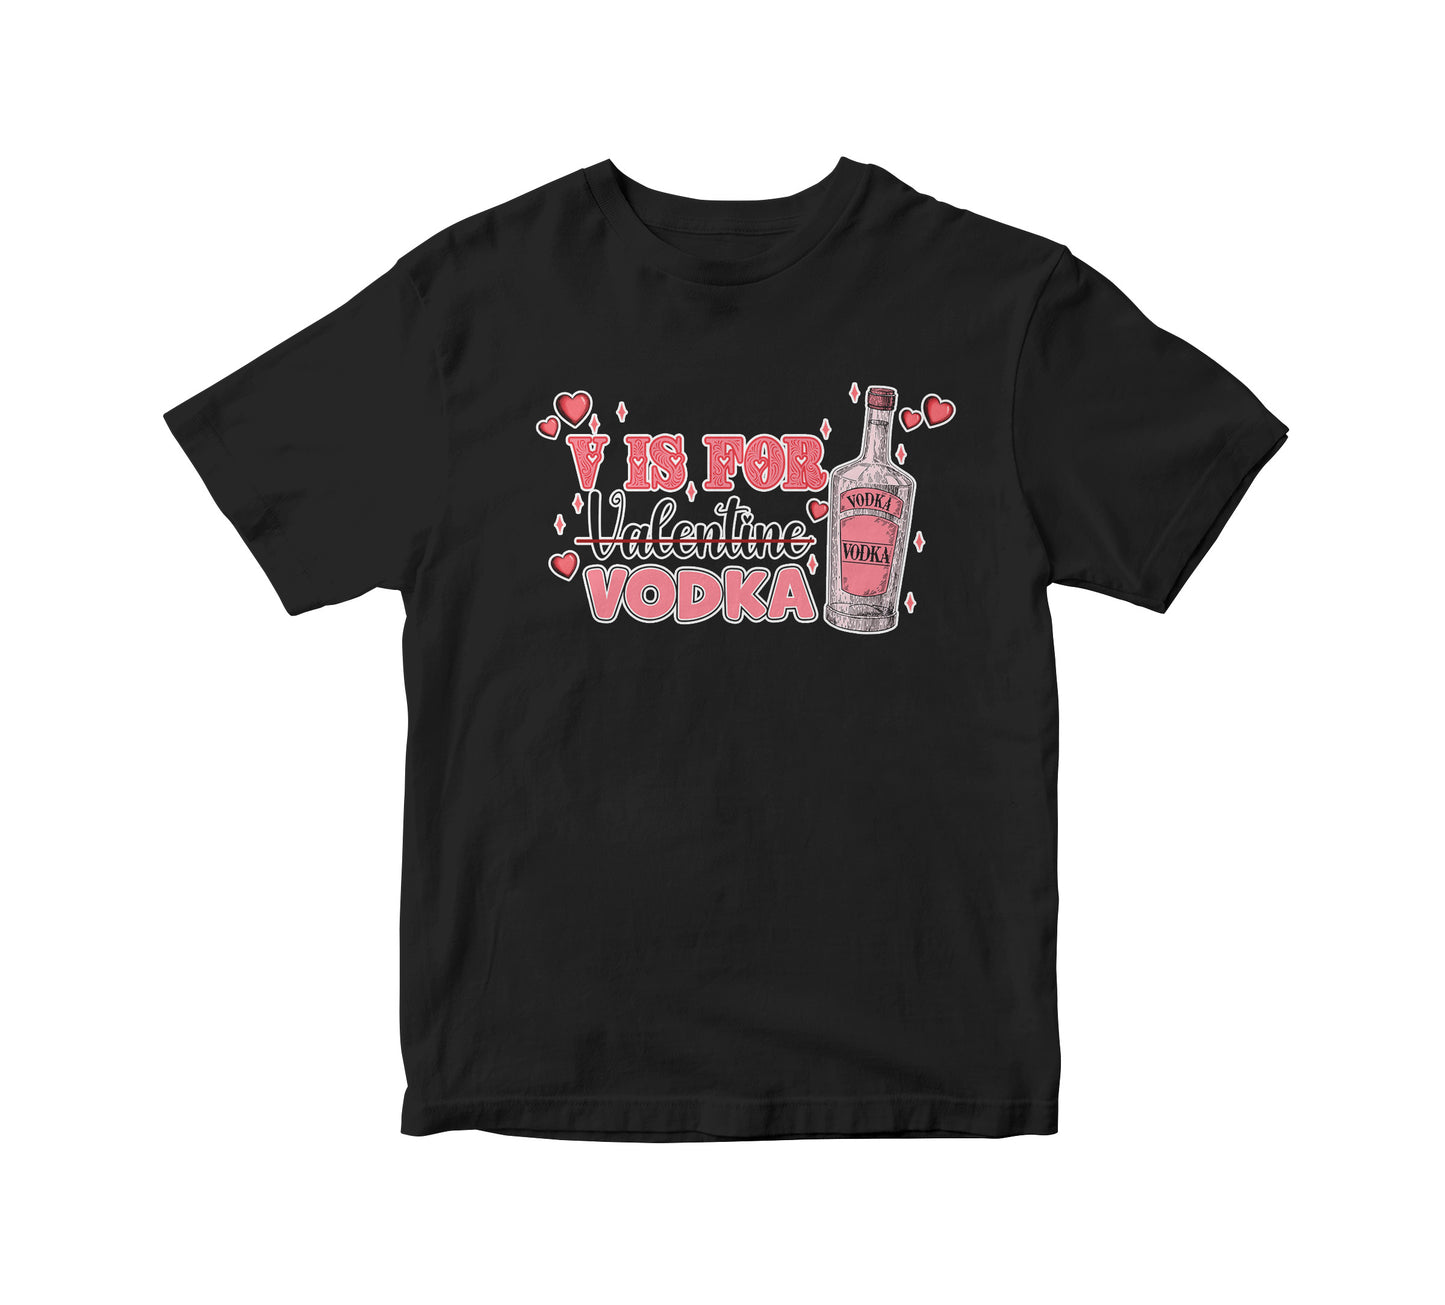 V is Vodka Adult Unisex T-Shirt